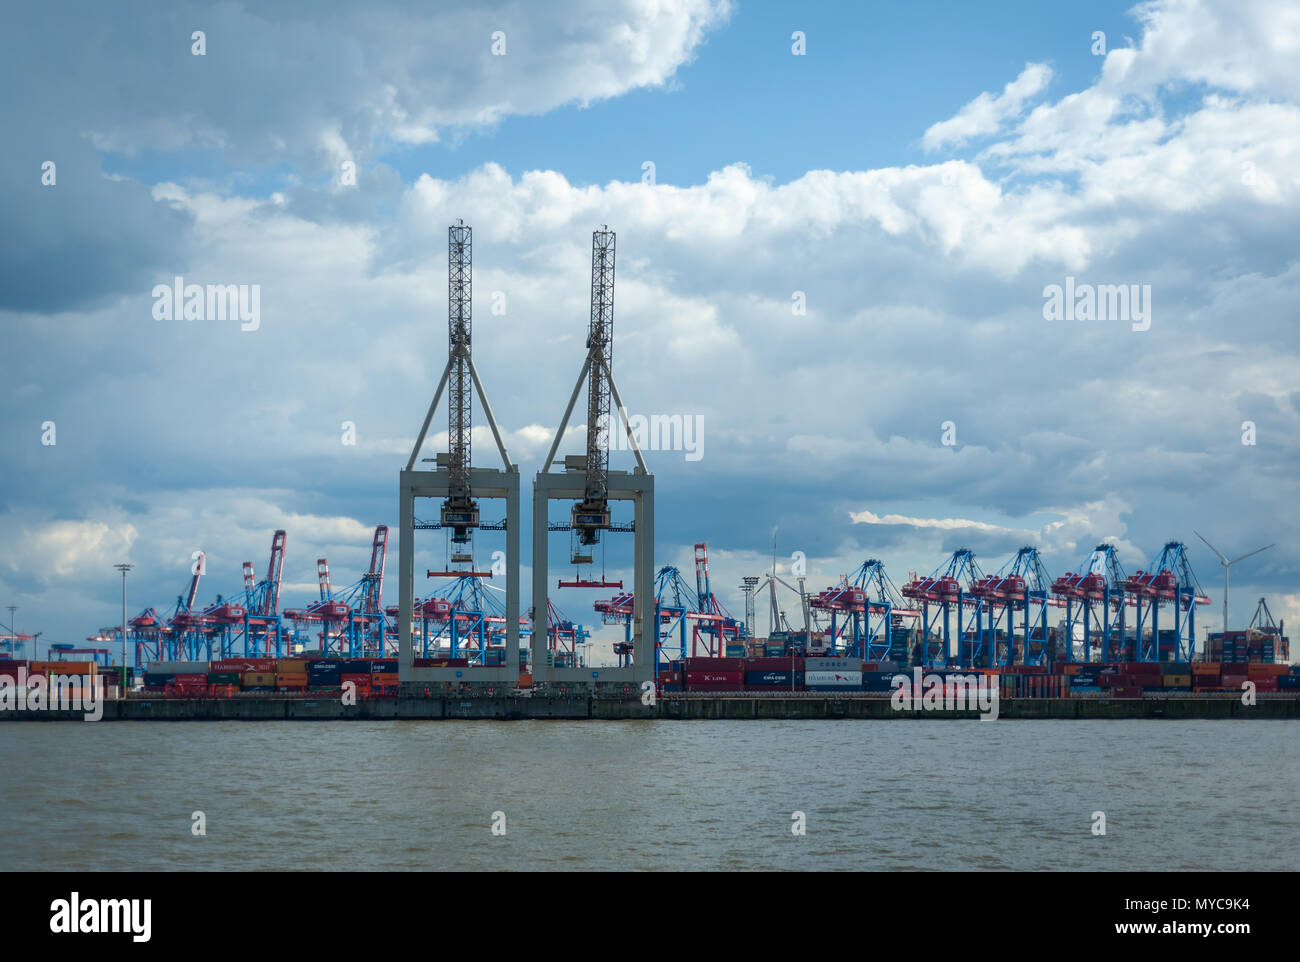 Amburgo, Germania - 26 Giugno 2014: vista in contenitore Burchardkai terminal del porto di Amburgo Germania al giorno e cielo nuvoloso con nessun popolo. Foto Stock